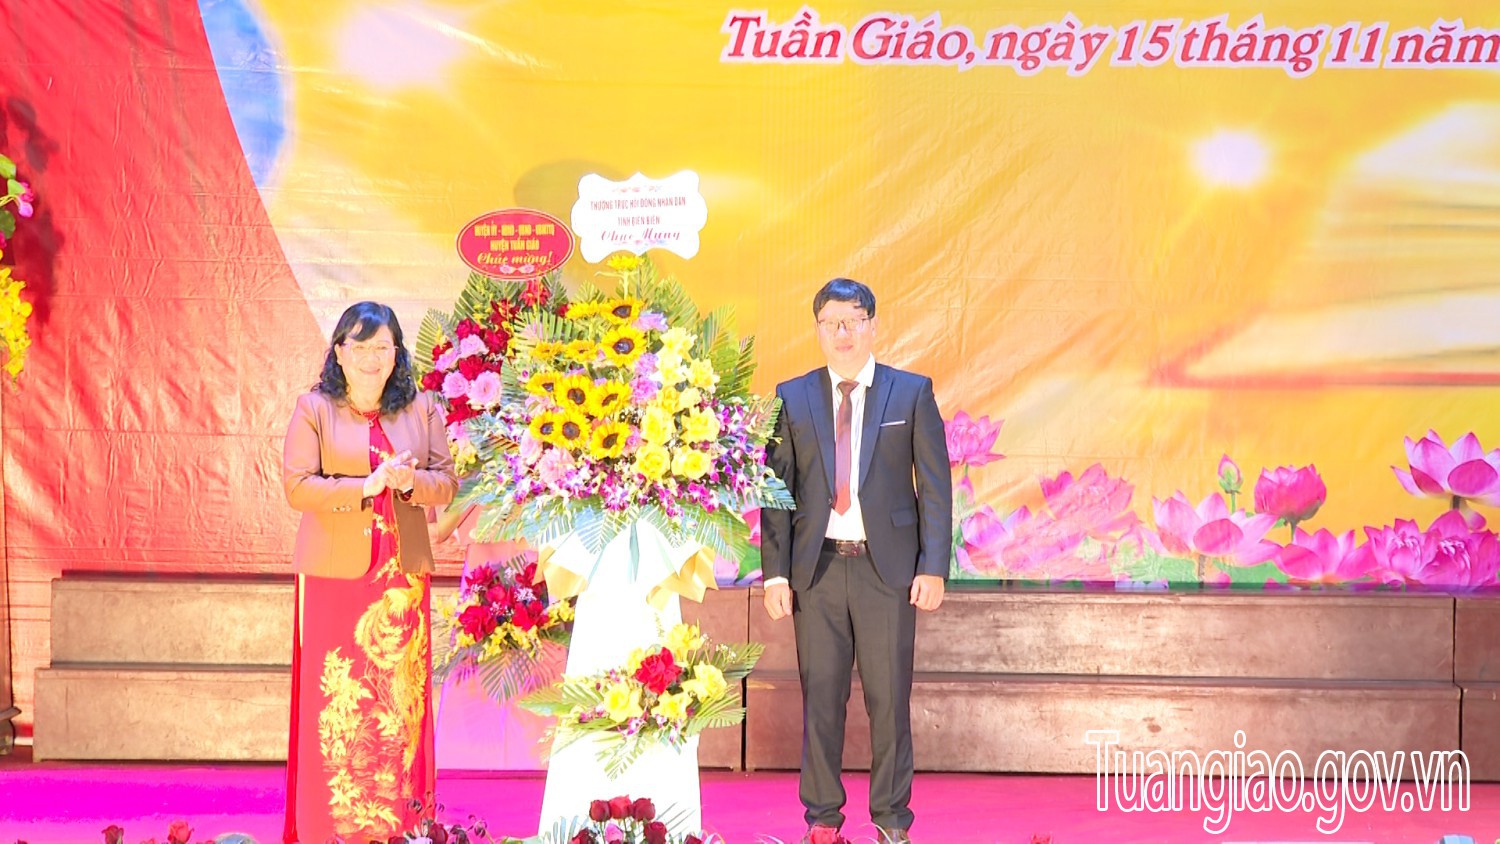 Ngành GD&ĐT hình bầu cua tôm cá
: Kỷ niệm 40 năm Ngày Nhà giáo Việt Nam